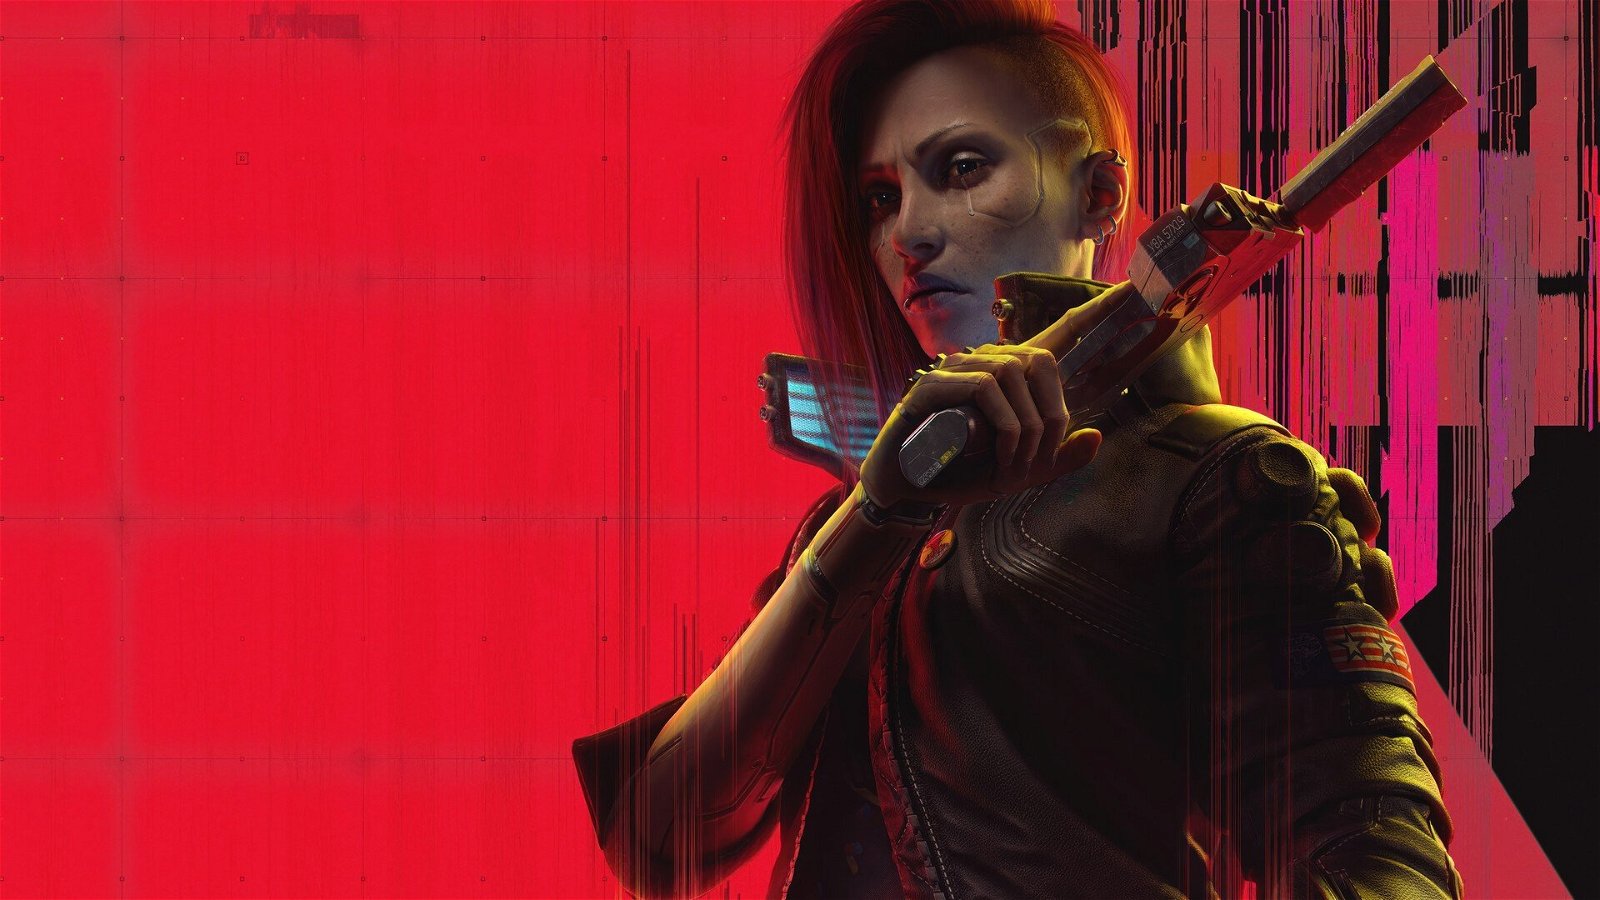 Immagine di Il seguito di Cyberpunk 2077 avrà il multiplayer, sperando non venga cancellato anche stavolta